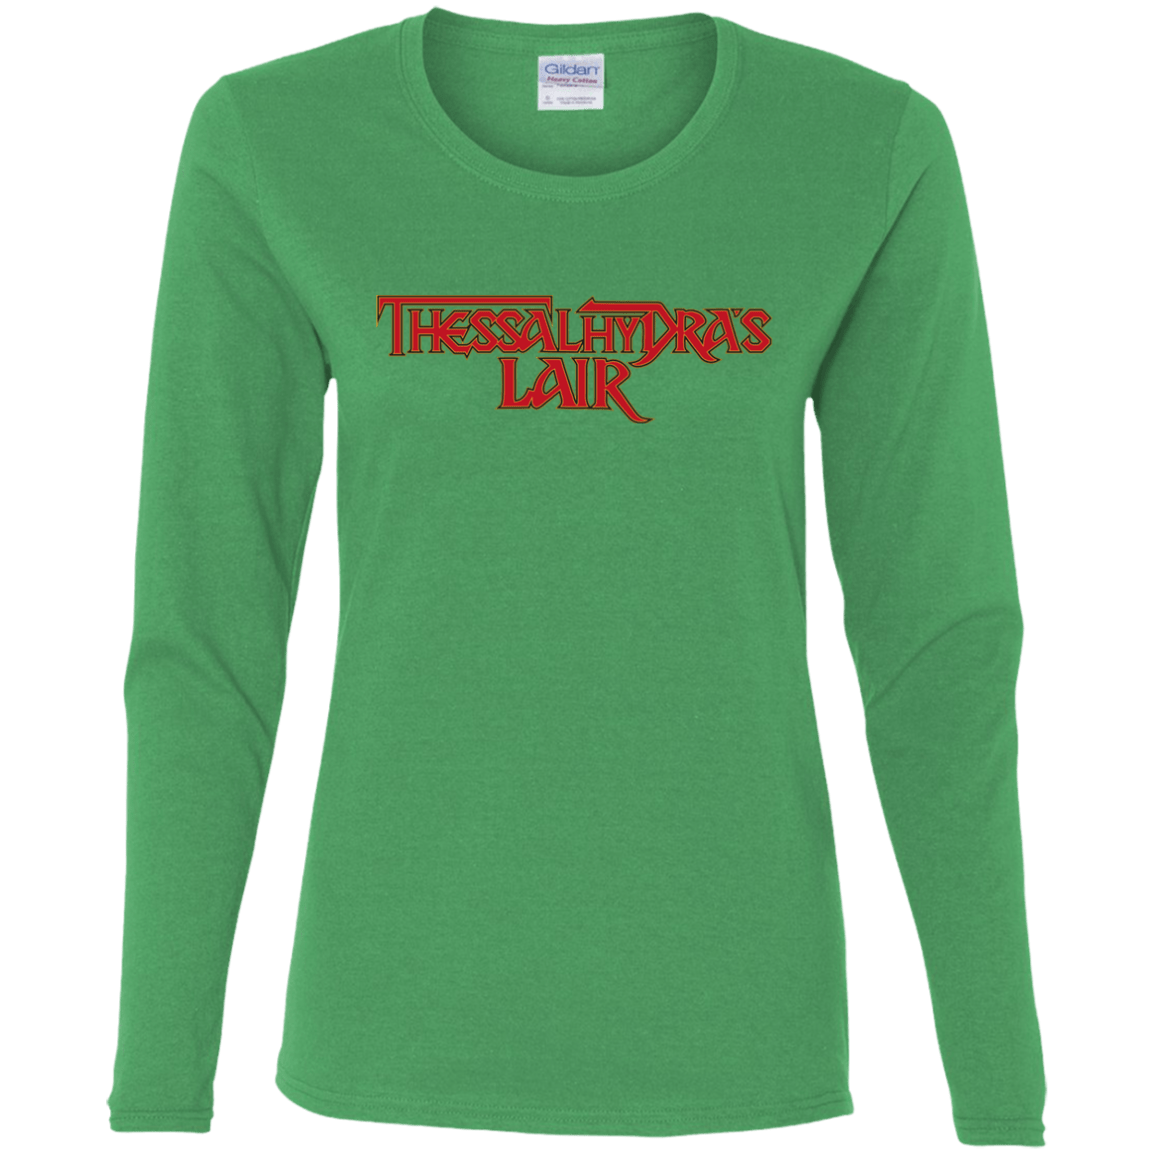 T-Shirts Irish Green / S Thessalhydras Lair Women's Long Sleeve T-Shirt